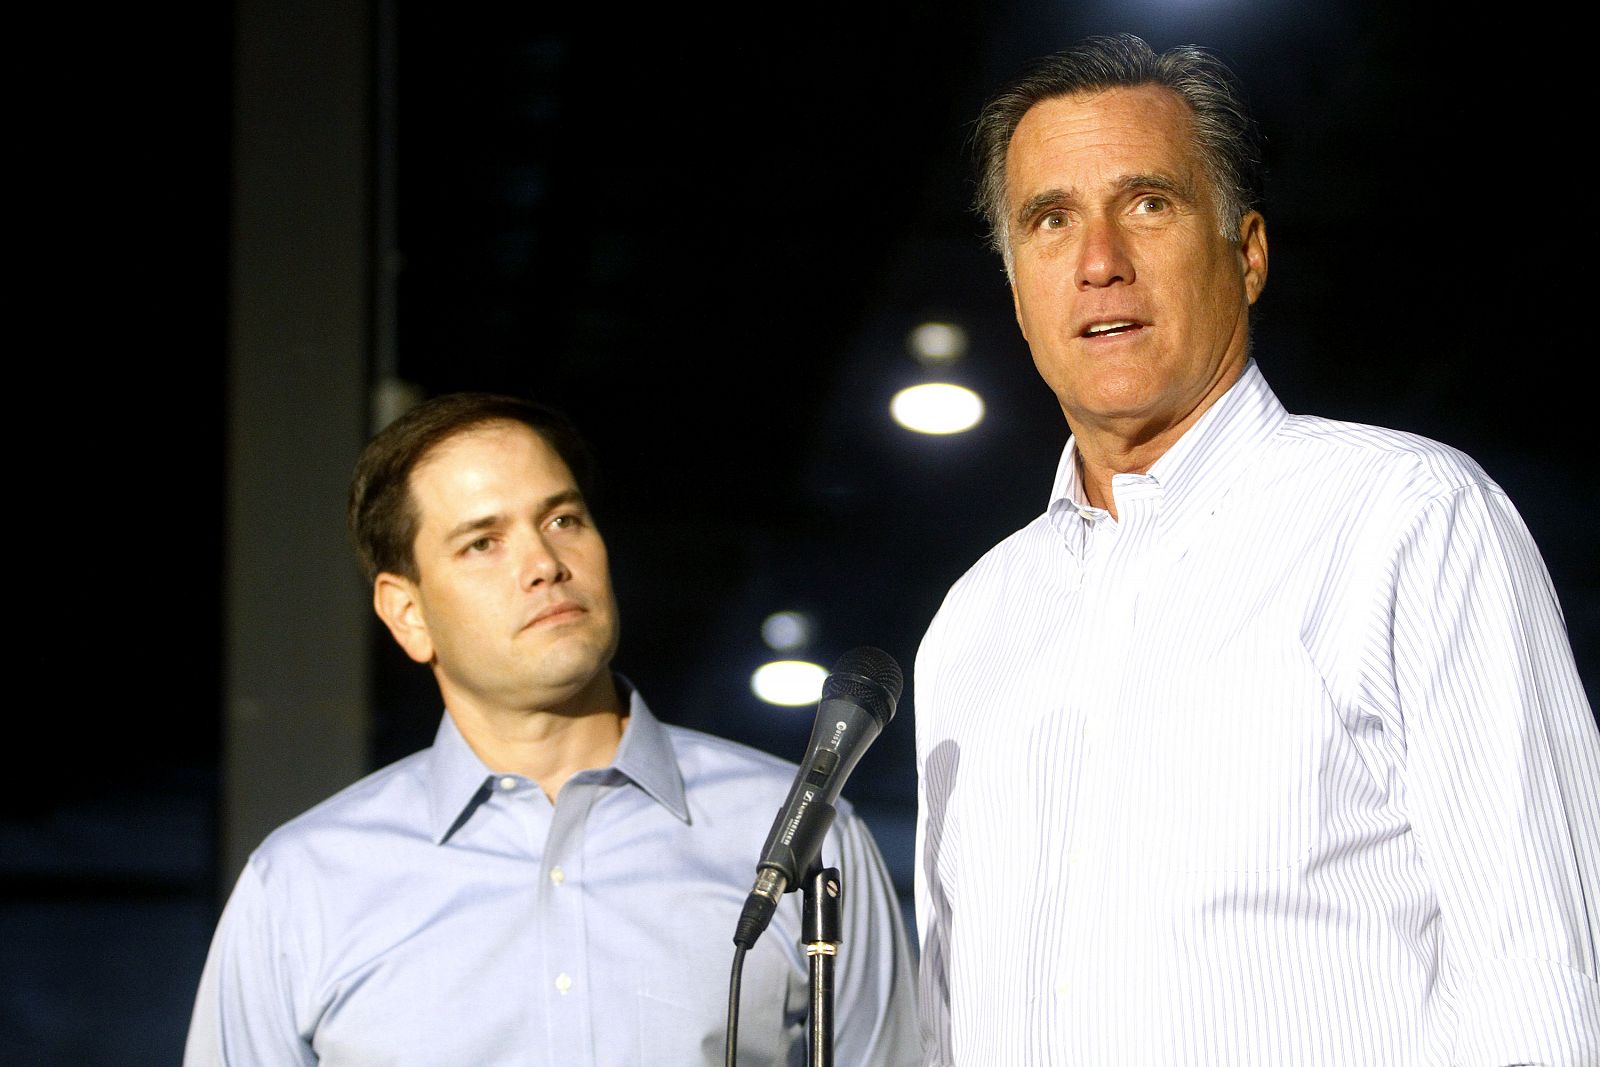 El senador por Florida Marco Rubio, a la izquierda, hace campaña con el candidato republicano Mitt Romney